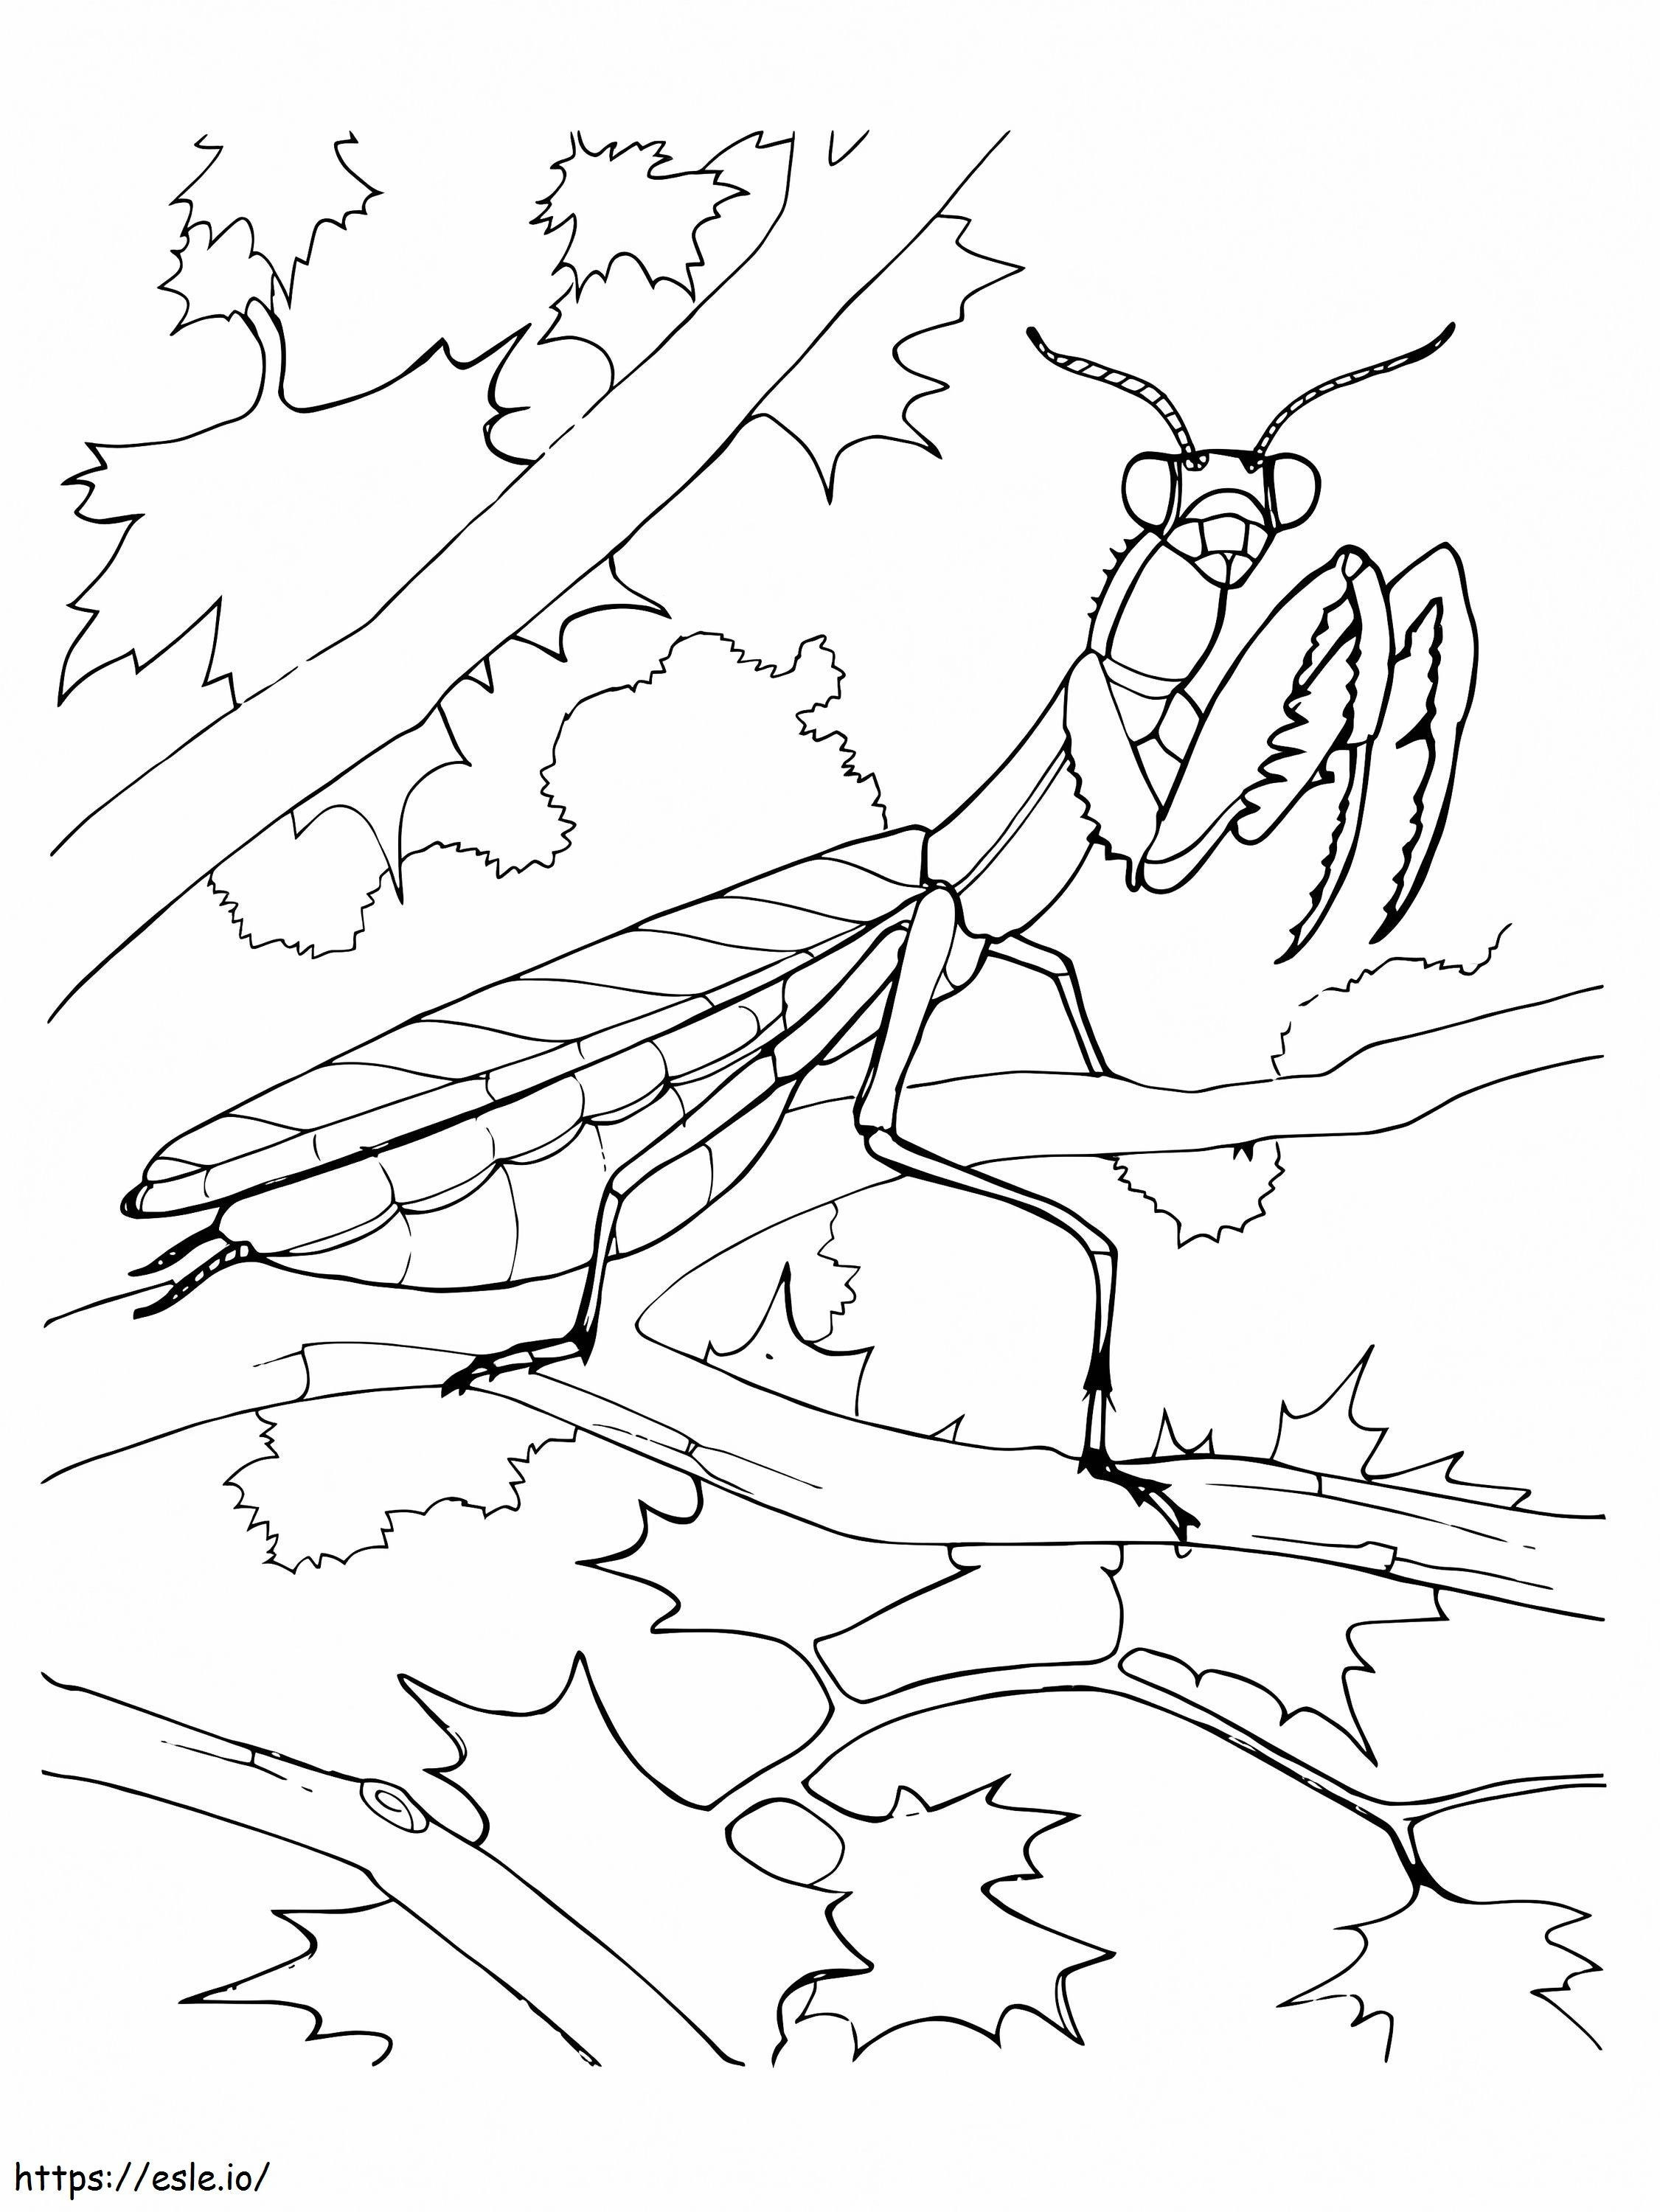 Free Praying Mantis coloring page